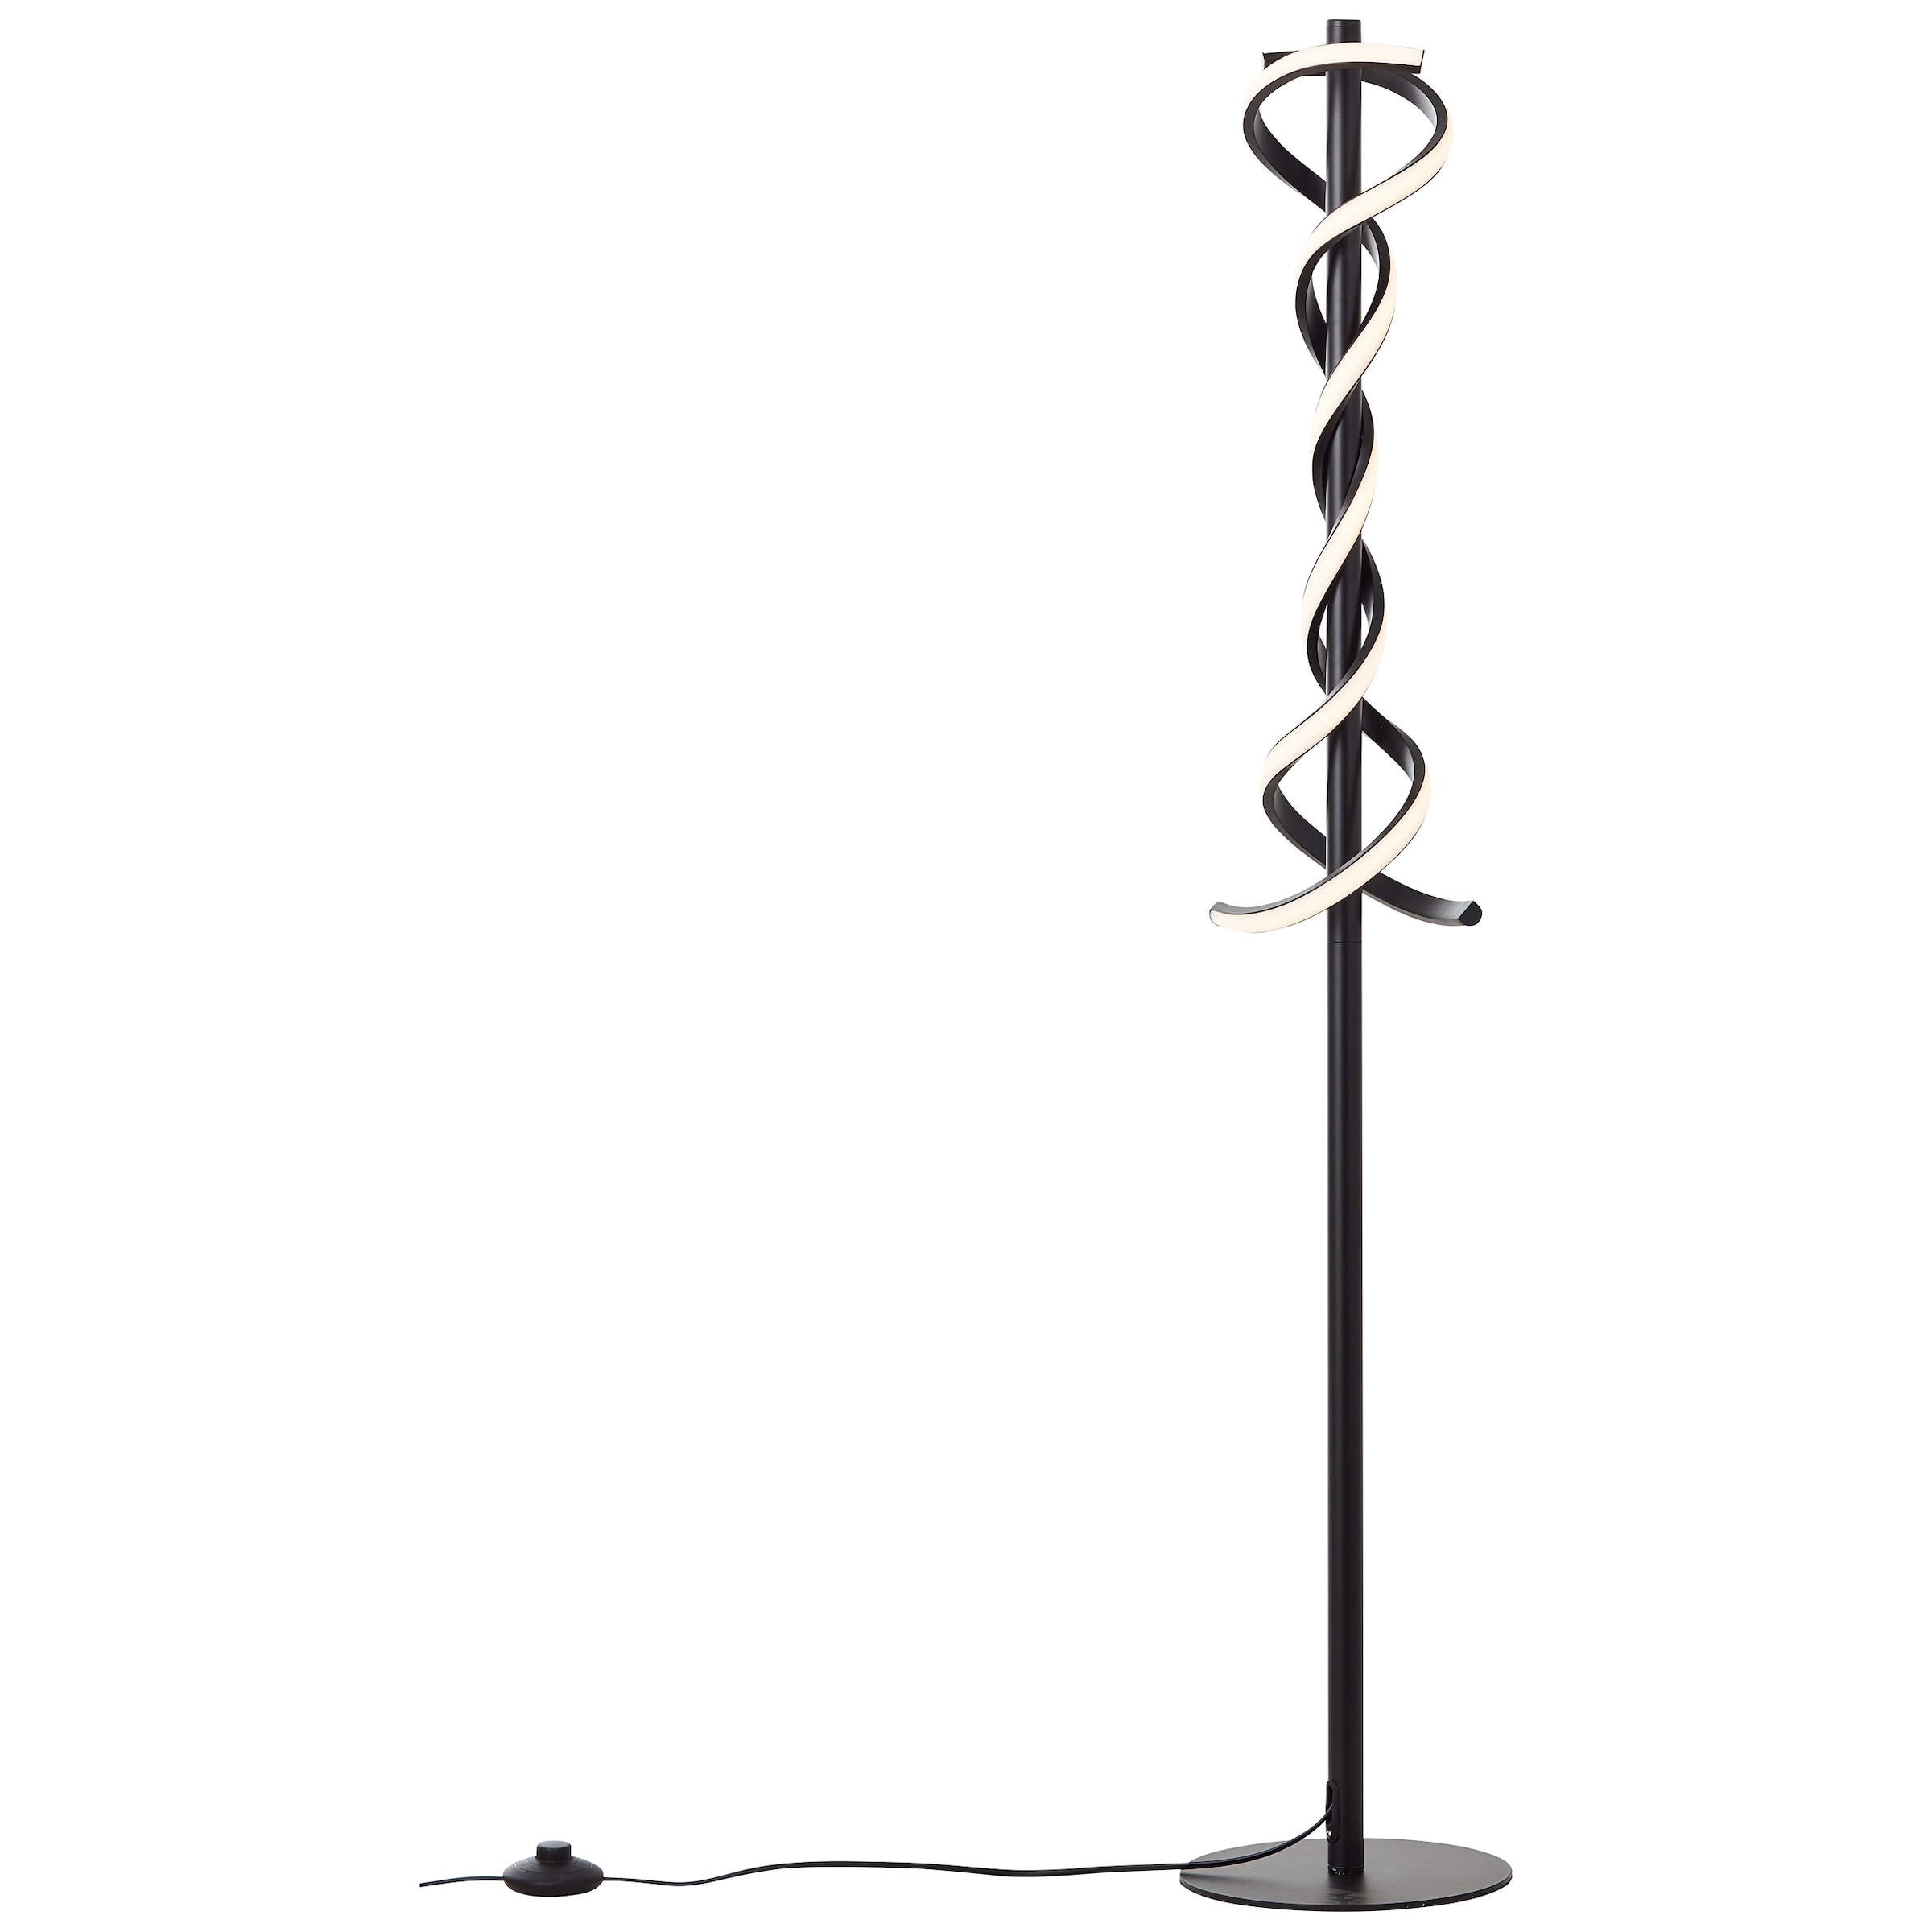 LED Stehlampe »Amalie«, 2100 lm, Höhe 128 cm, Metall/Kunststoff, schwarz